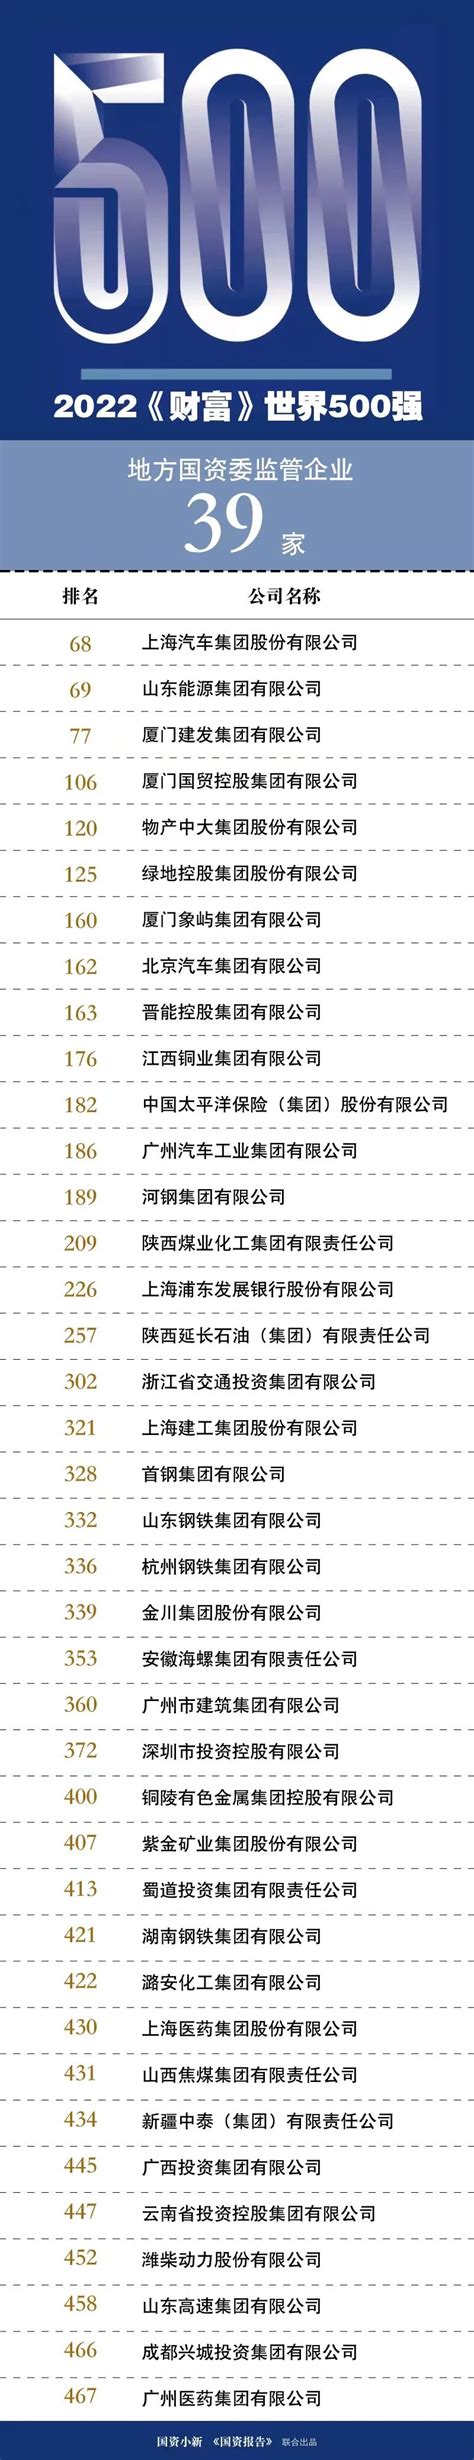 中国500强企业名单_2018中国500强企业名单 - 随意云